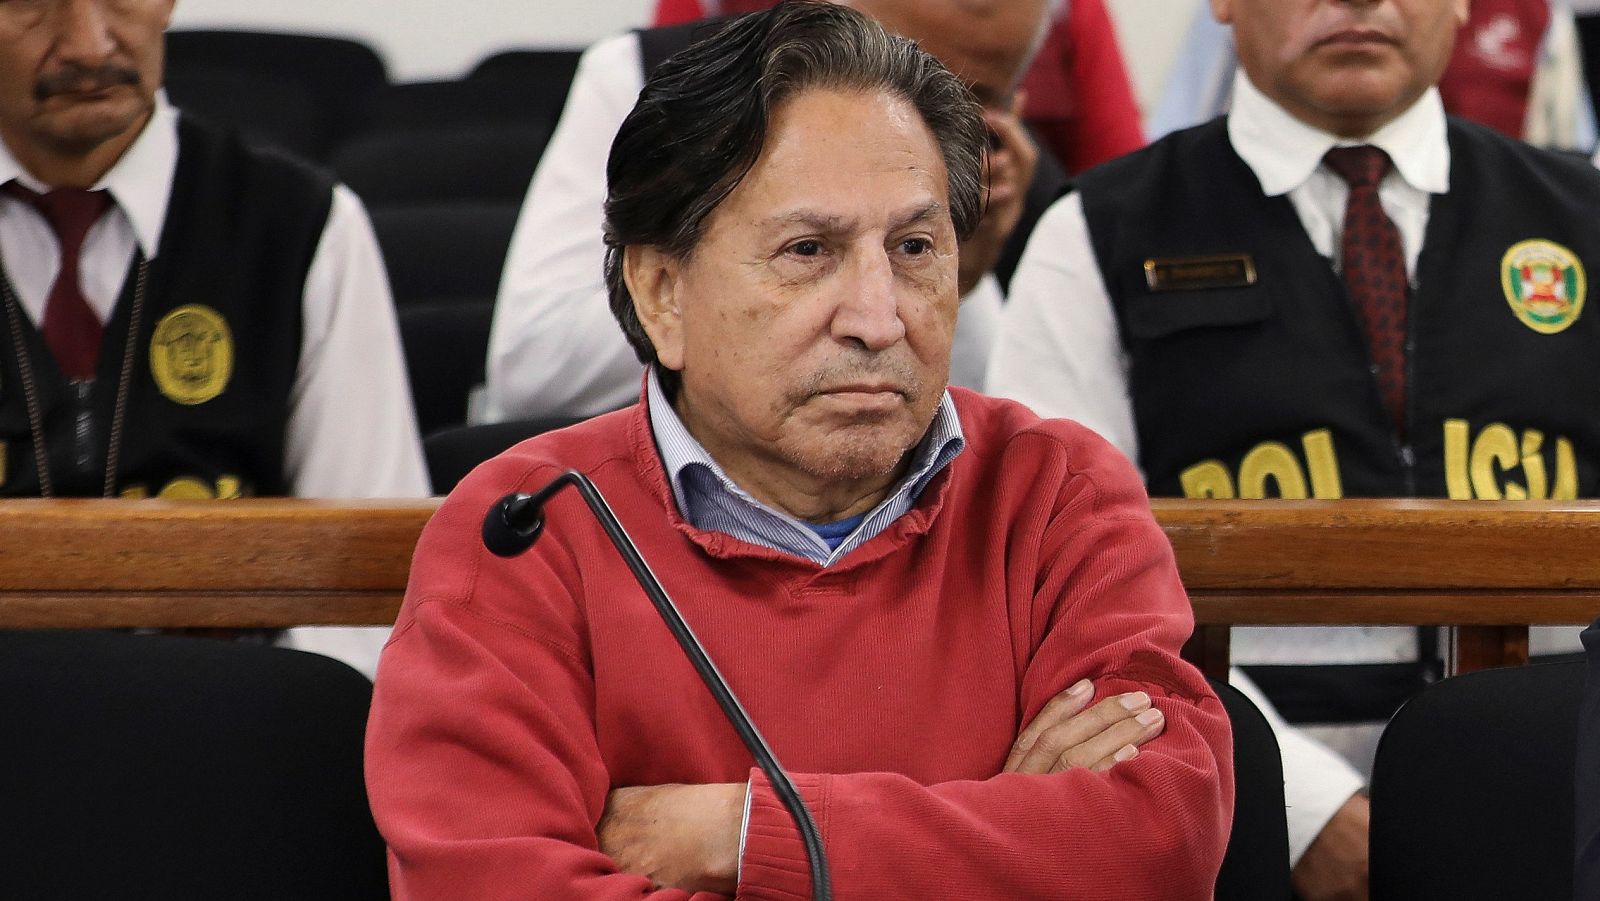 El expresidente peruano Alejandro Toledo entra en prisión preventiva